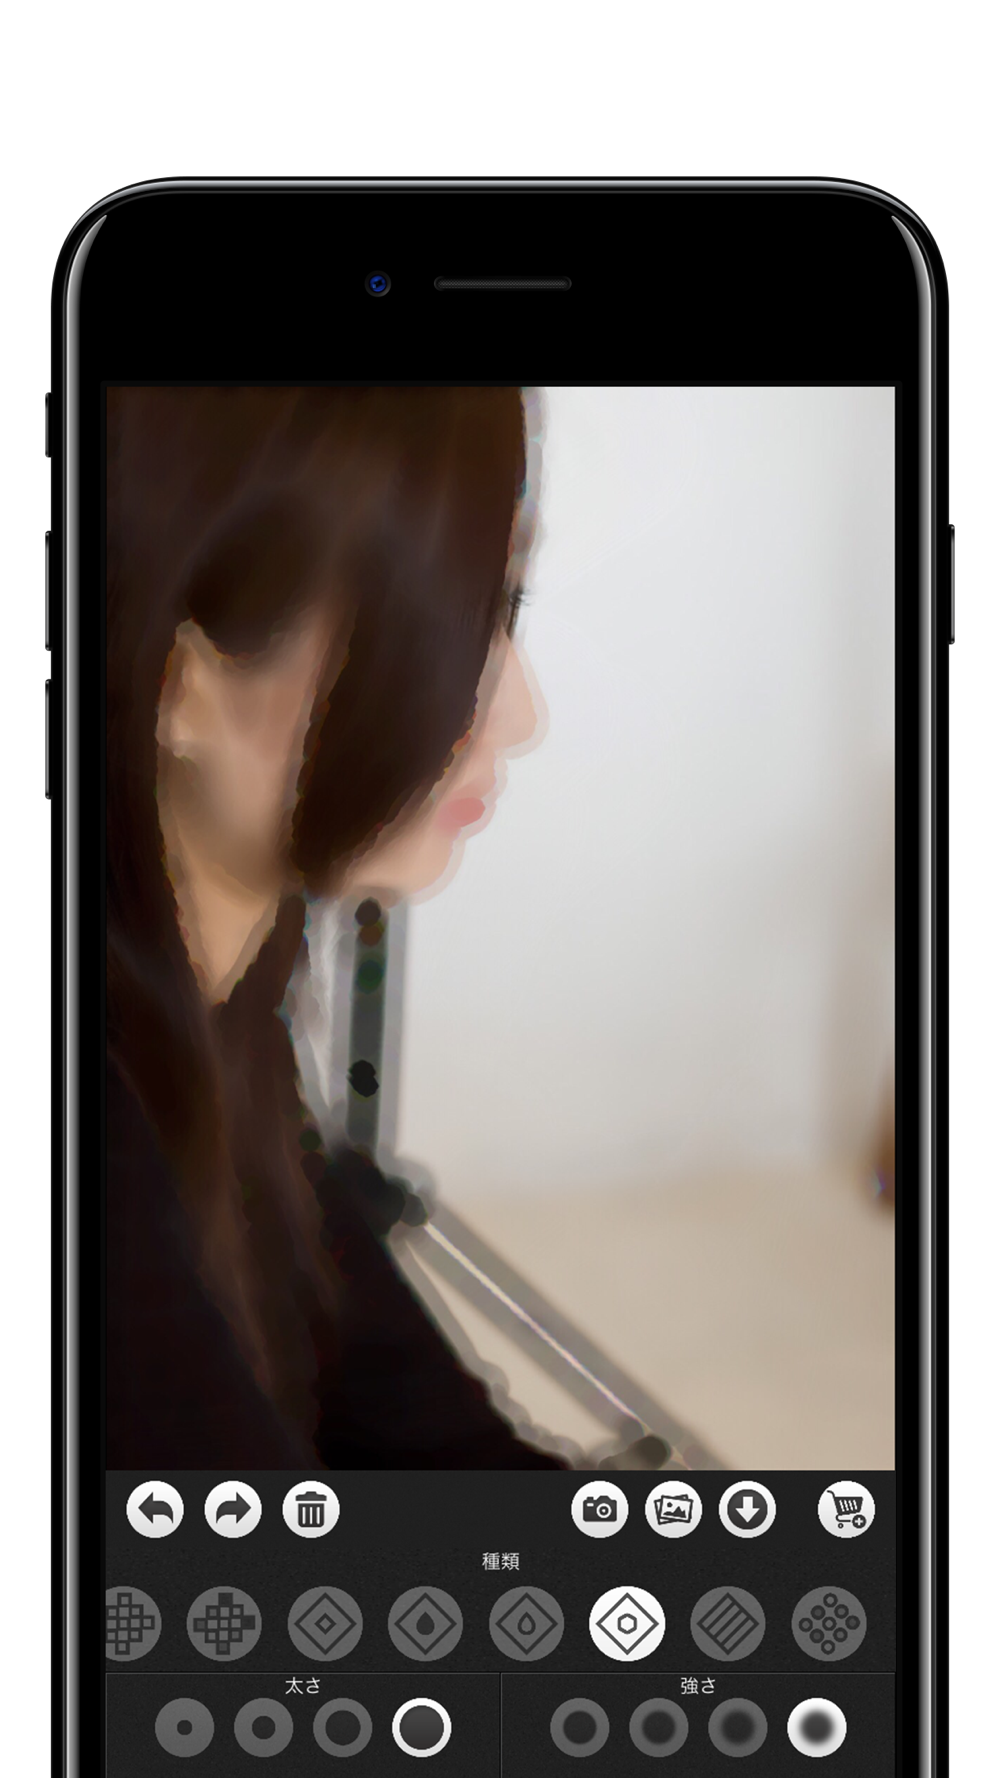 モザイク ぼかし モザイク加工アプリ Free Download App For Iphone Steprimo Com